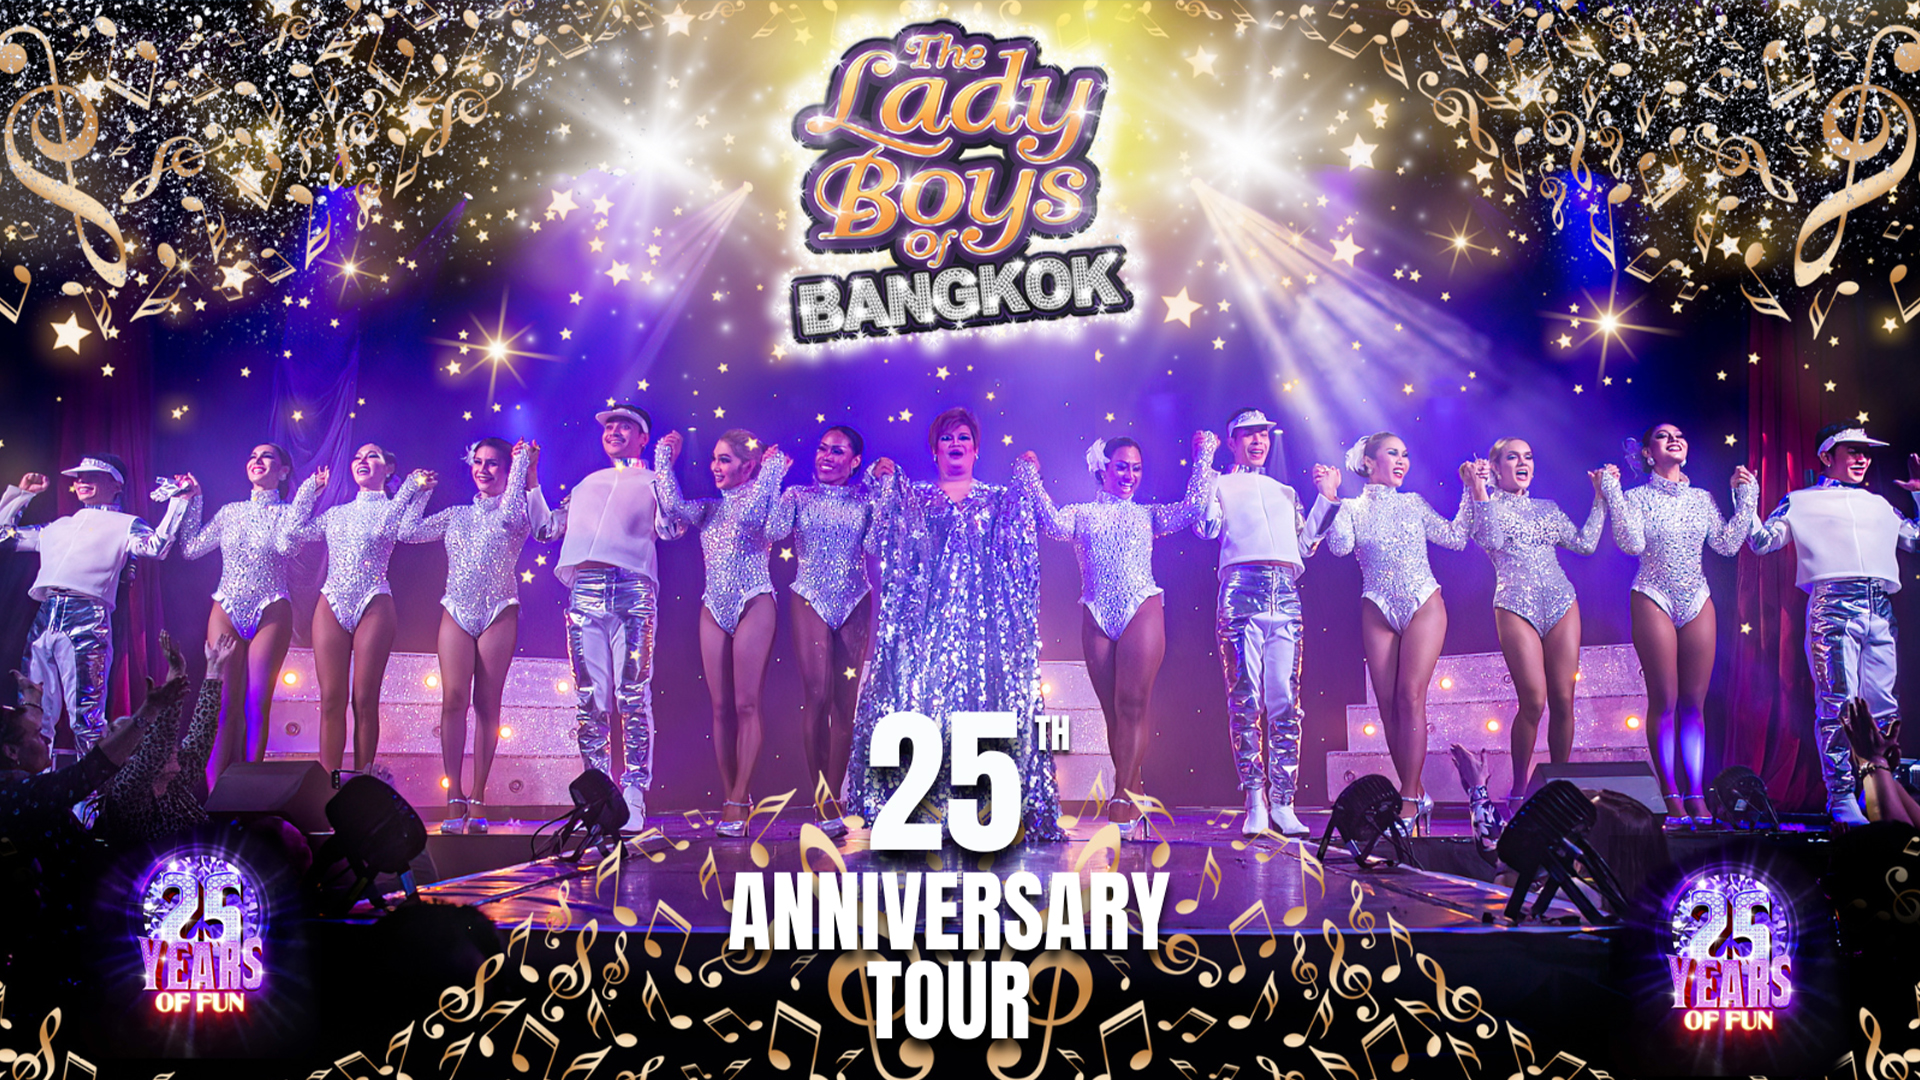 The Ladyboys of Bangkok: 25th Anniversary Tour